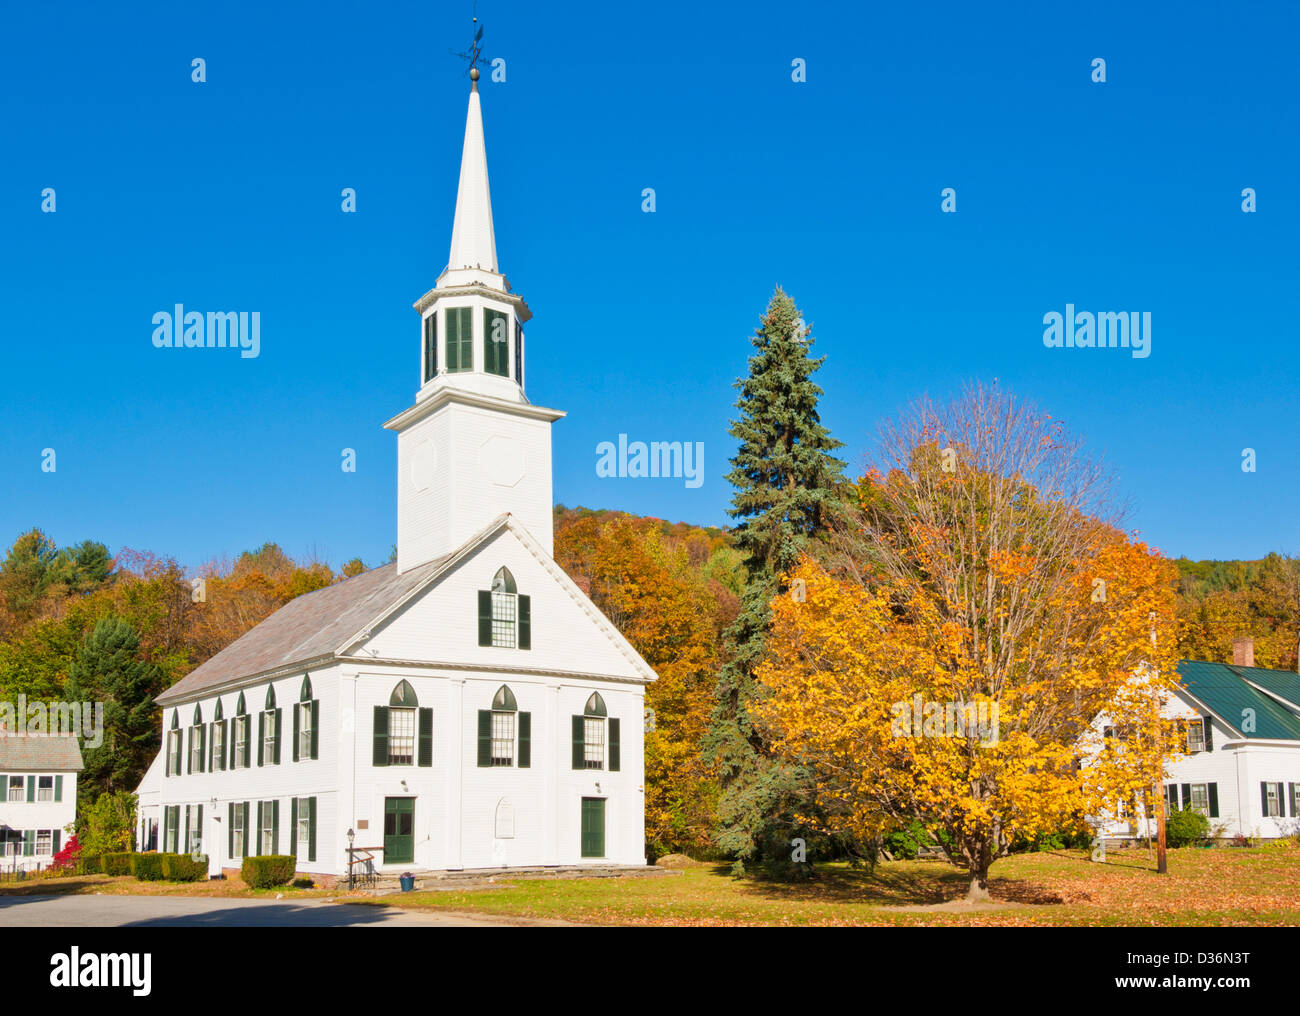 Herbstfärbung rund um das traditionelle weiße Holz verkleidete Kirche Townshend Vermont Vereinigte Staaten von Amerika USA Stockfoto